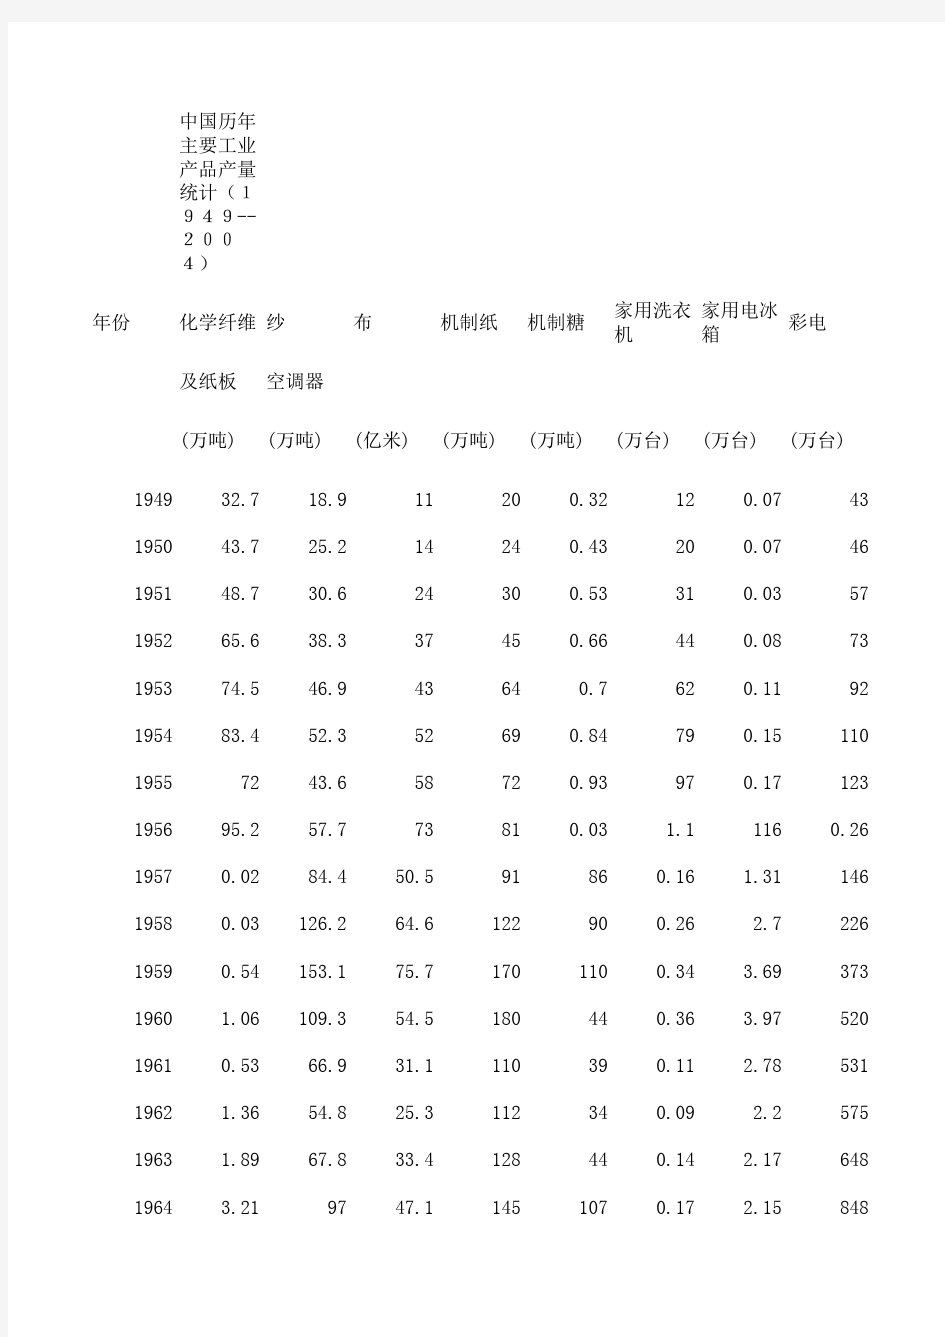 中国历年主要工业产品产量统计(1949--2004)